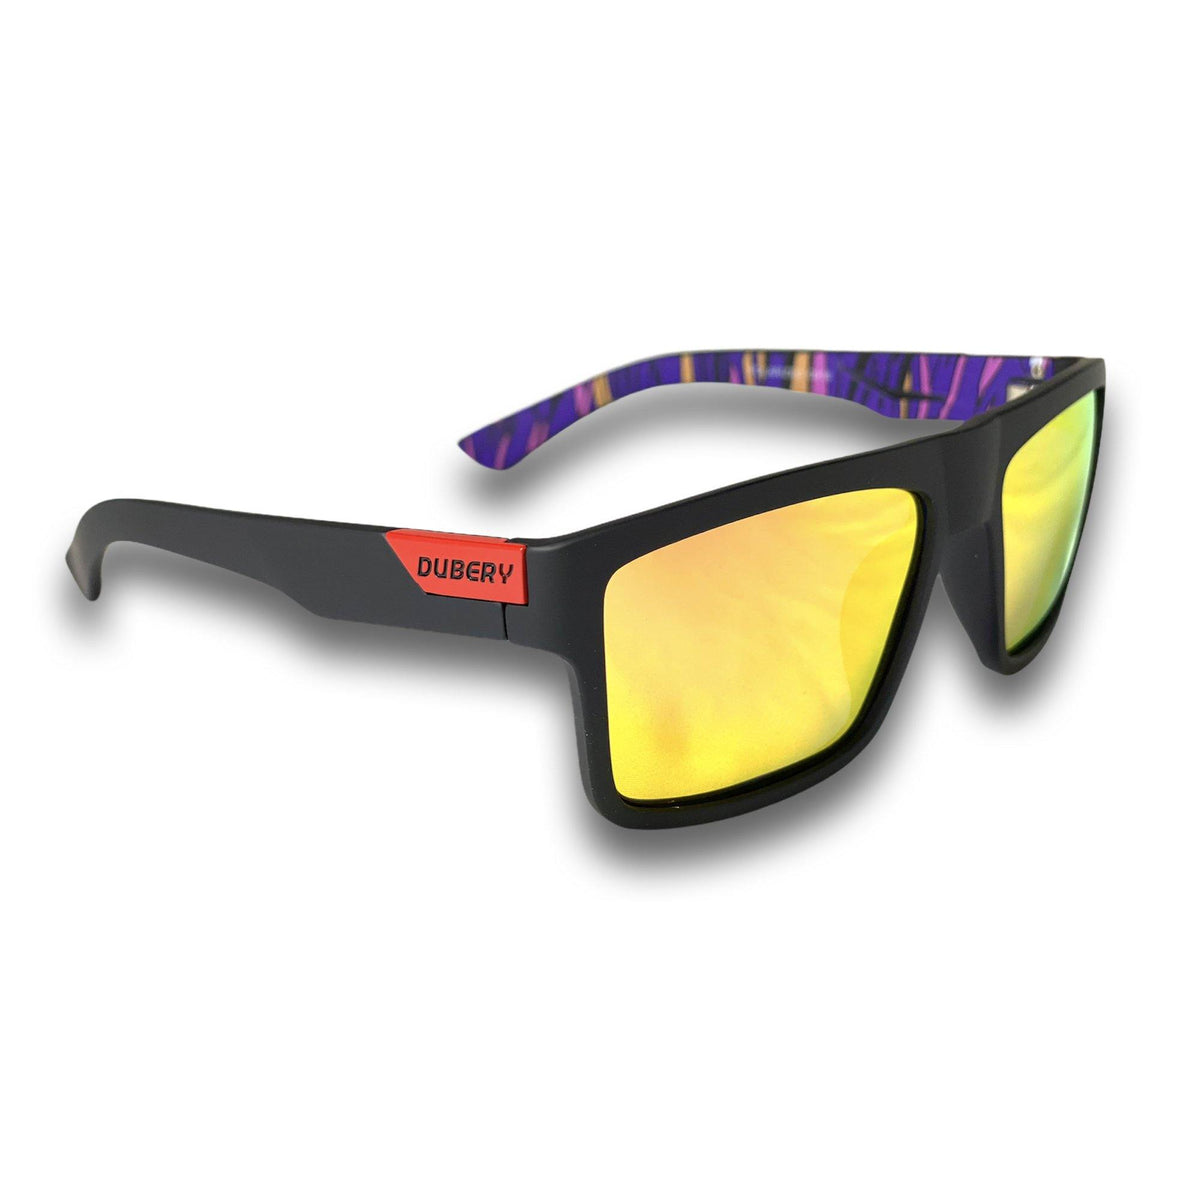 Best Fishing Sunglasses 2020– Dubery Optics Sunglasses